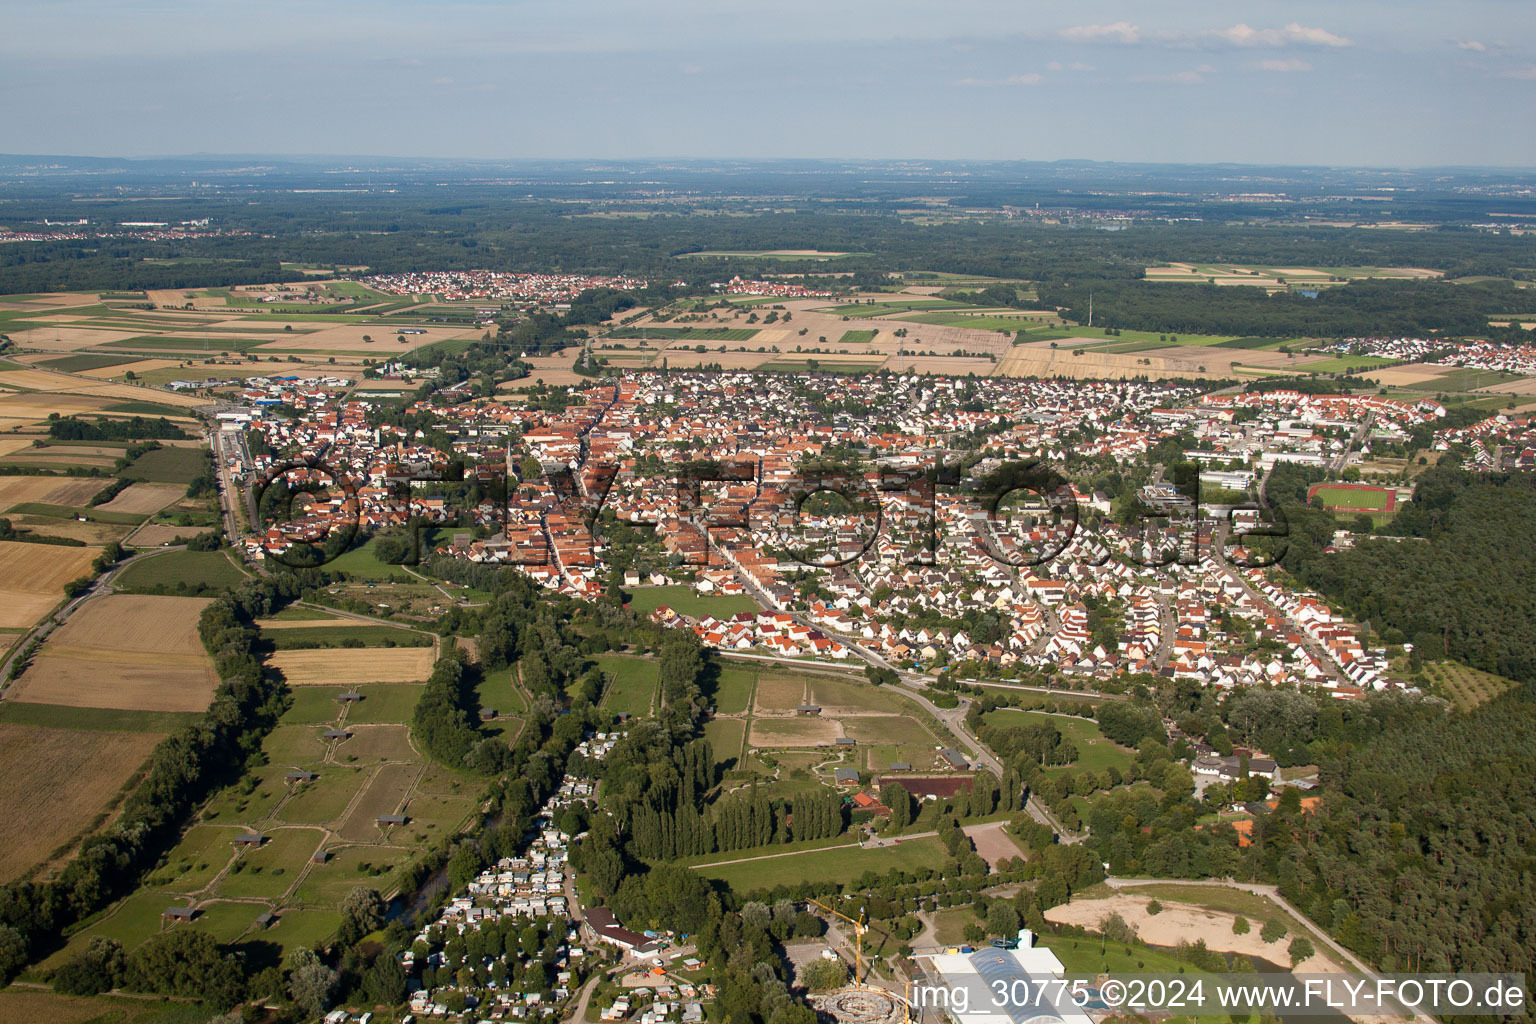 Vue aérienne de Champs agricoles et surfaces utilisables à Rülzheim dans le département Rhénanie-Palatinat, Allemagne